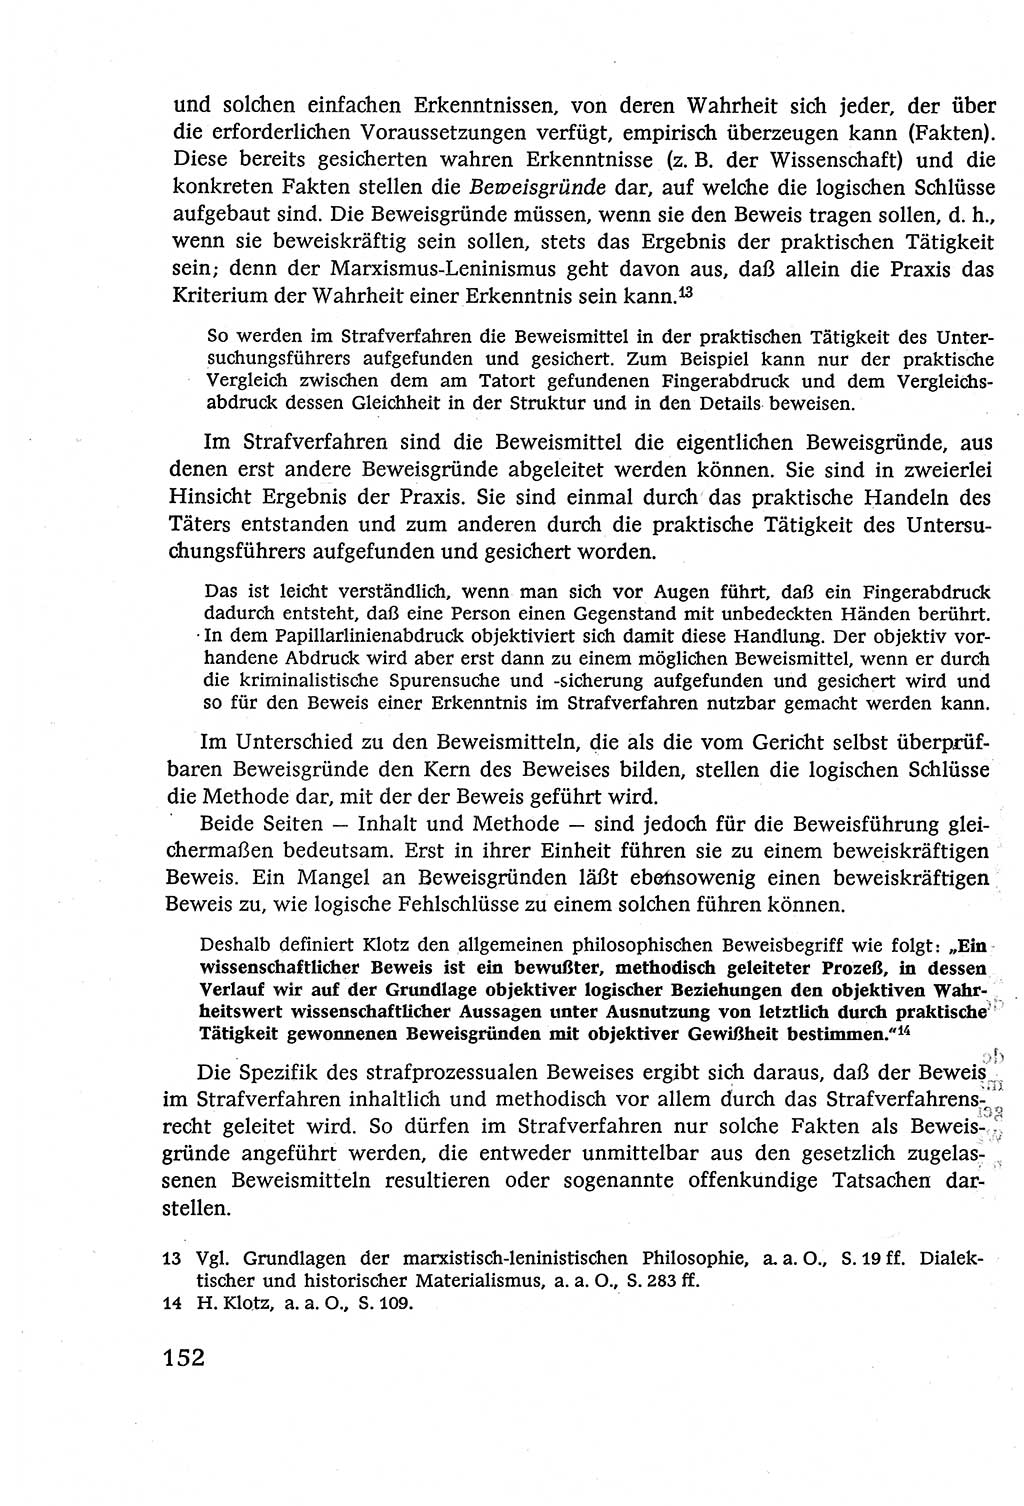 Strafverfahrensrecht [Deutsche Demokratische Republik (DDR)], Lehrbuch 1977, Seite 152 (Strafverf.-R. DDR Lb. 1977, S. 152)